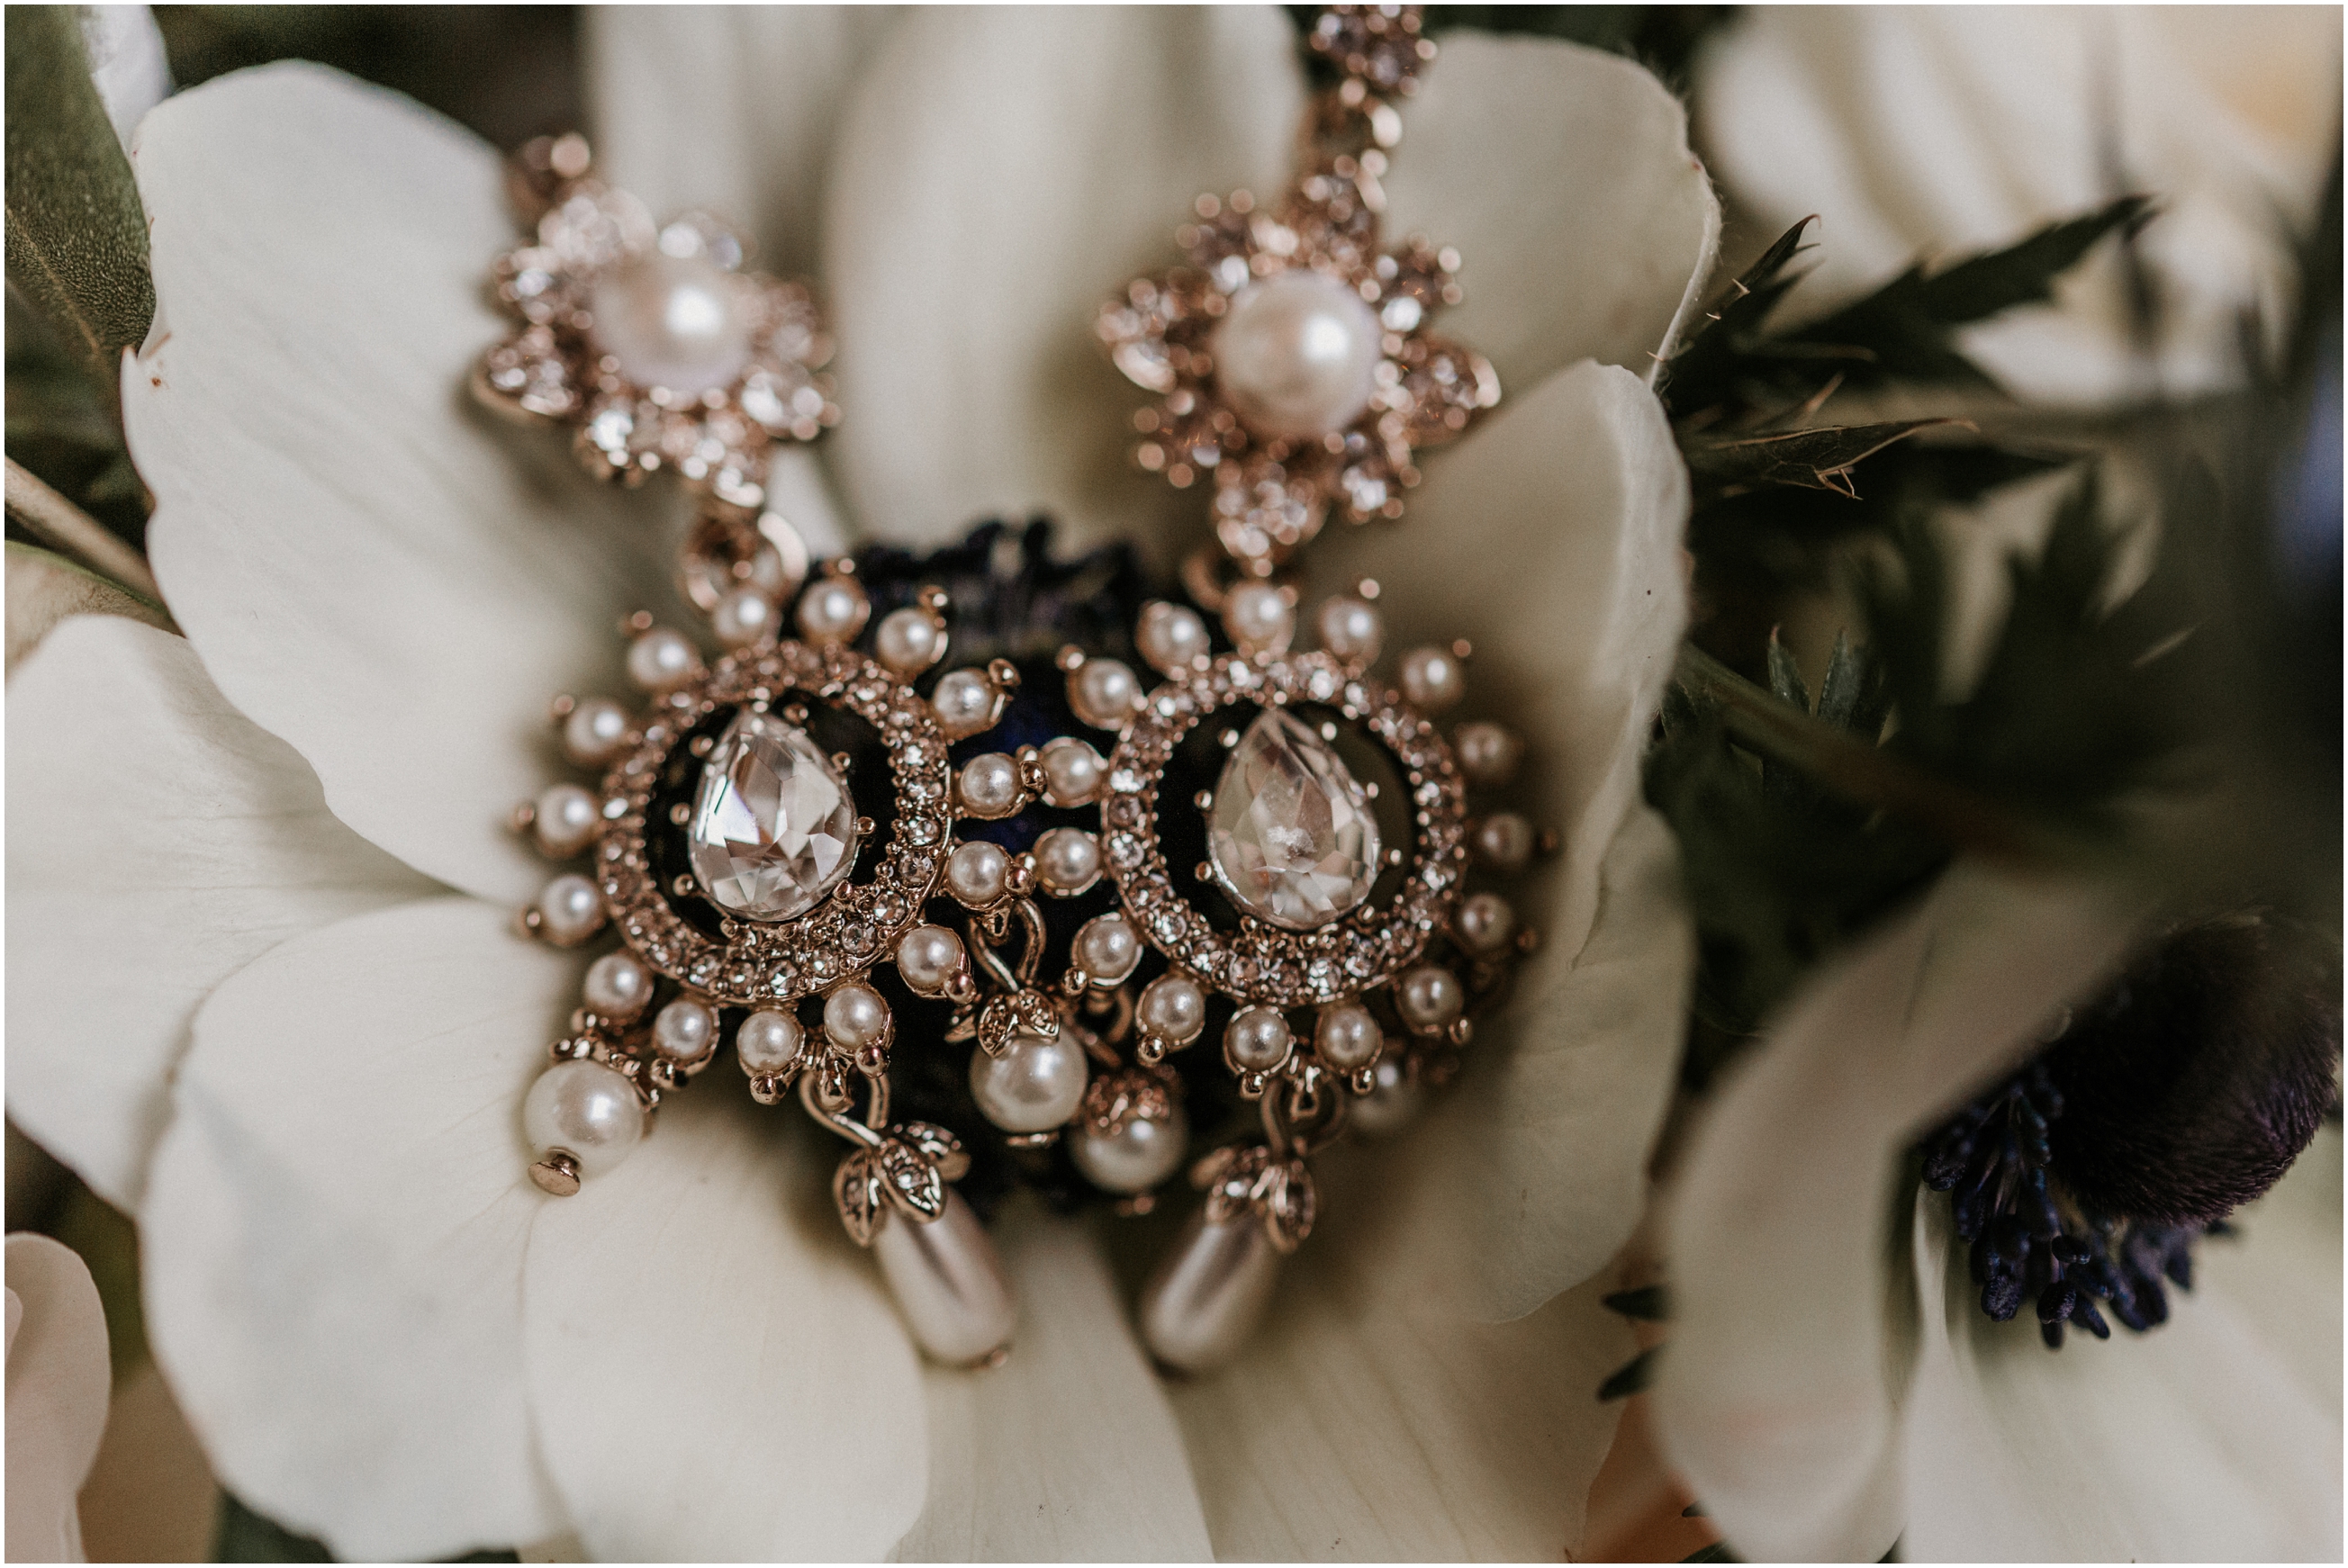 bride's wedding earrings sitting on flower in bouquet